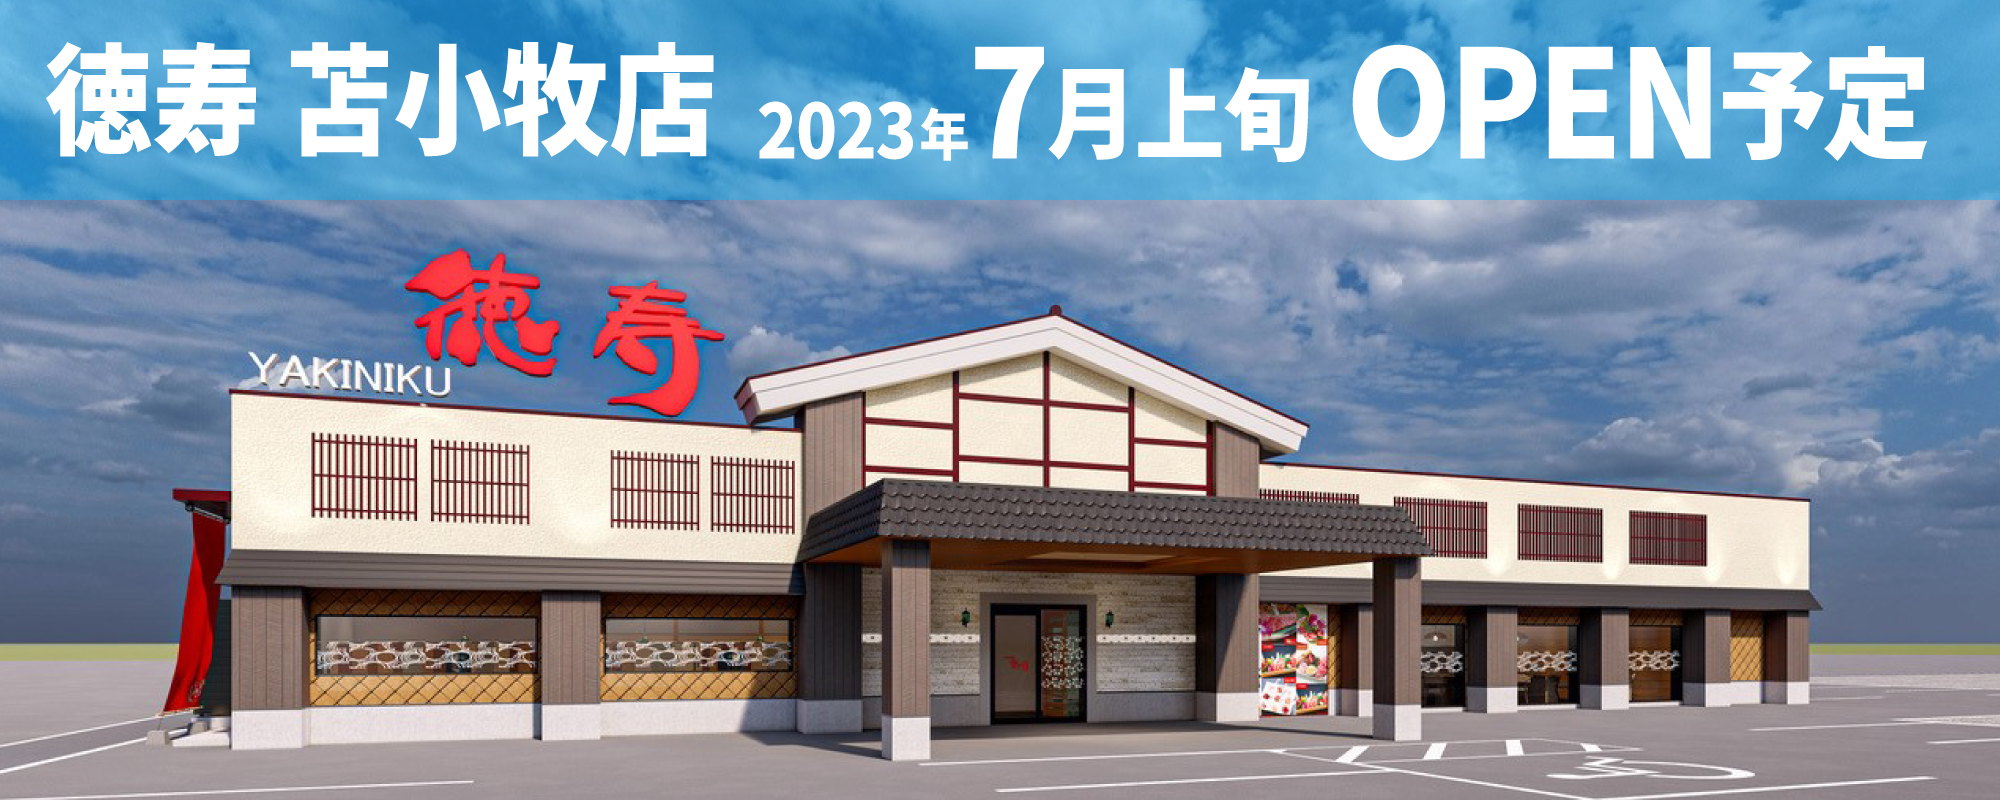 徳寿 苫小牧店2023年7月上旬OPEN予定